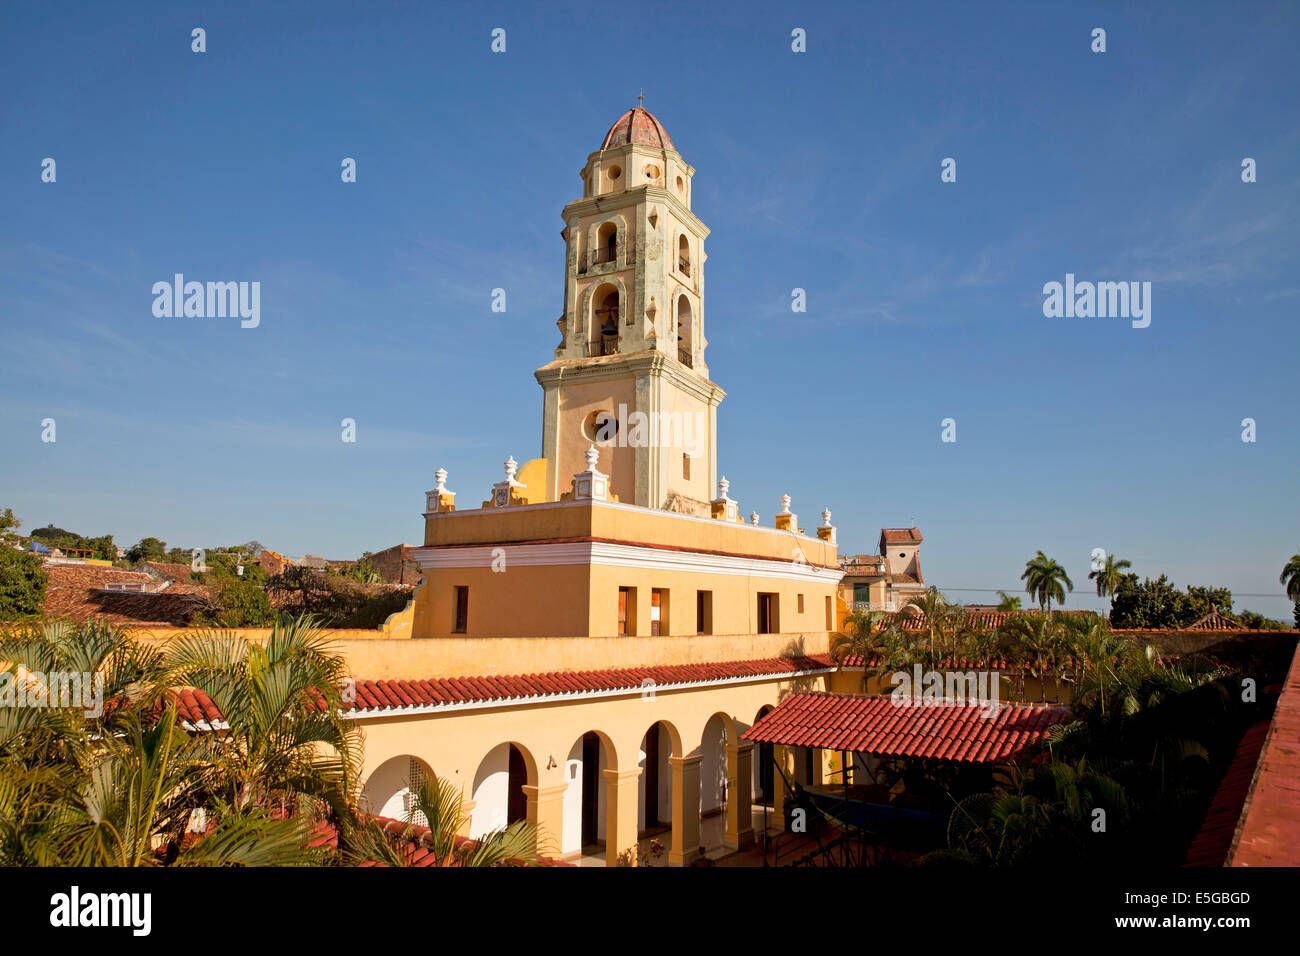 bell tower of the Convento de San Francisco in Trinidad, Cuba, Caribbean Stock Photo